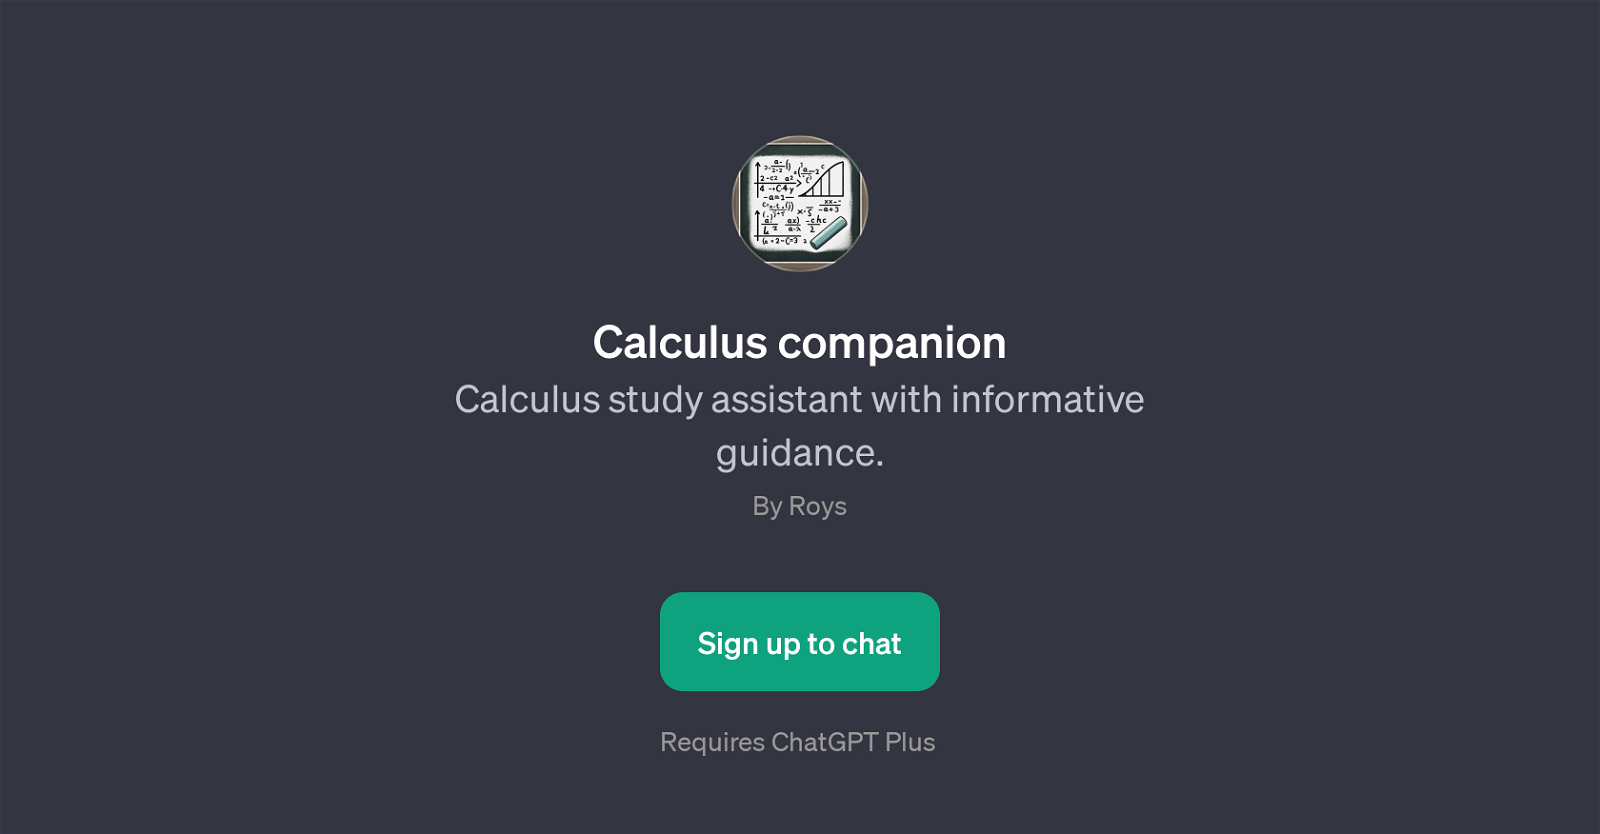 Calculus companion website